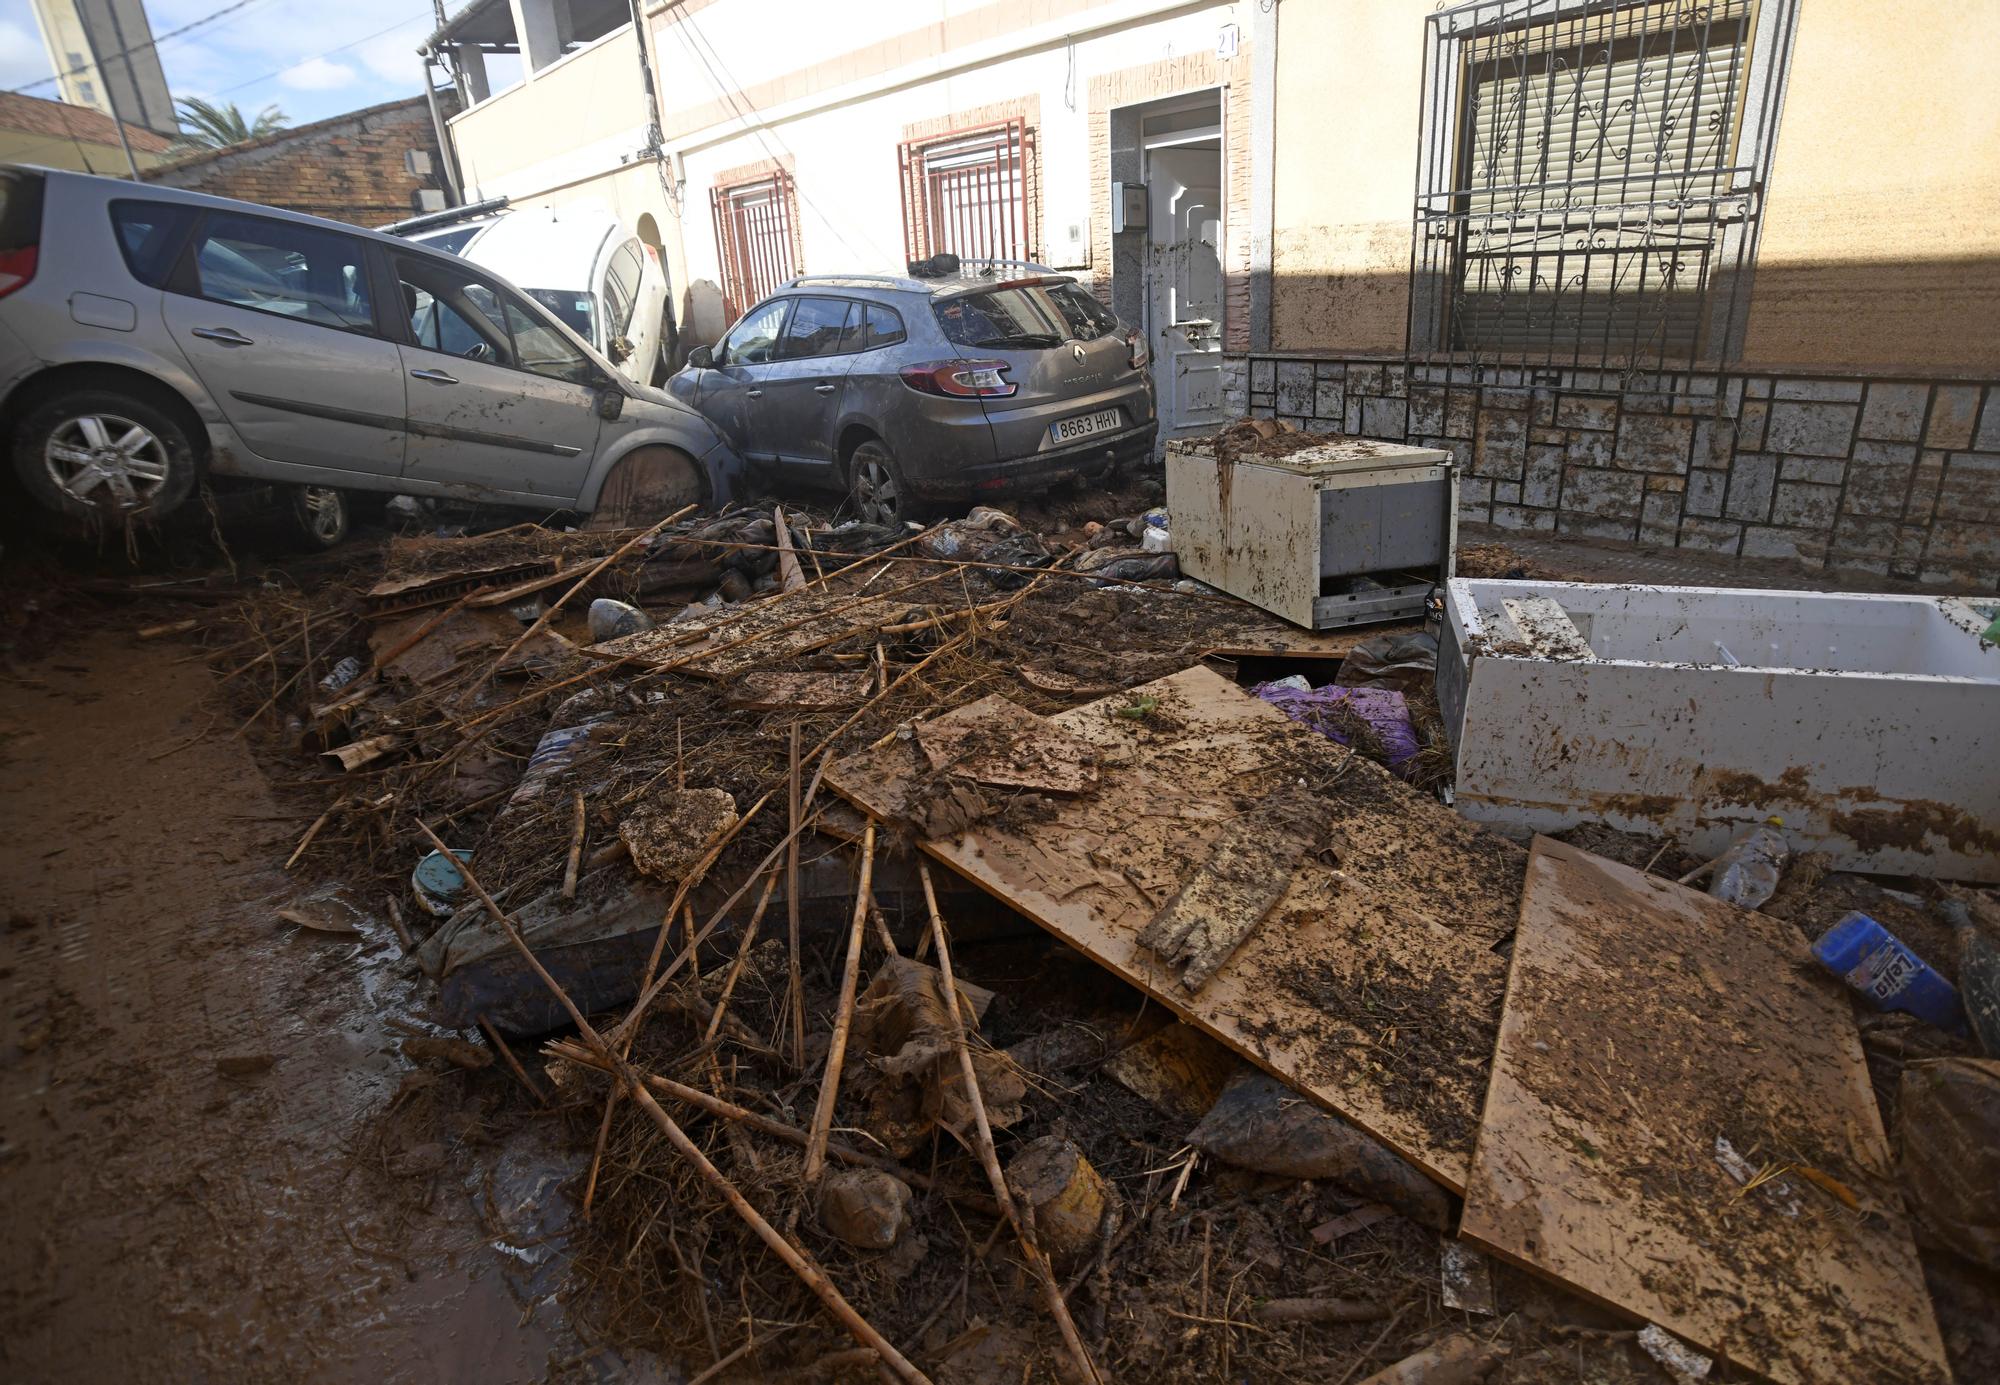 Los estragos del temporal en Javalí Viejo, en imágenes